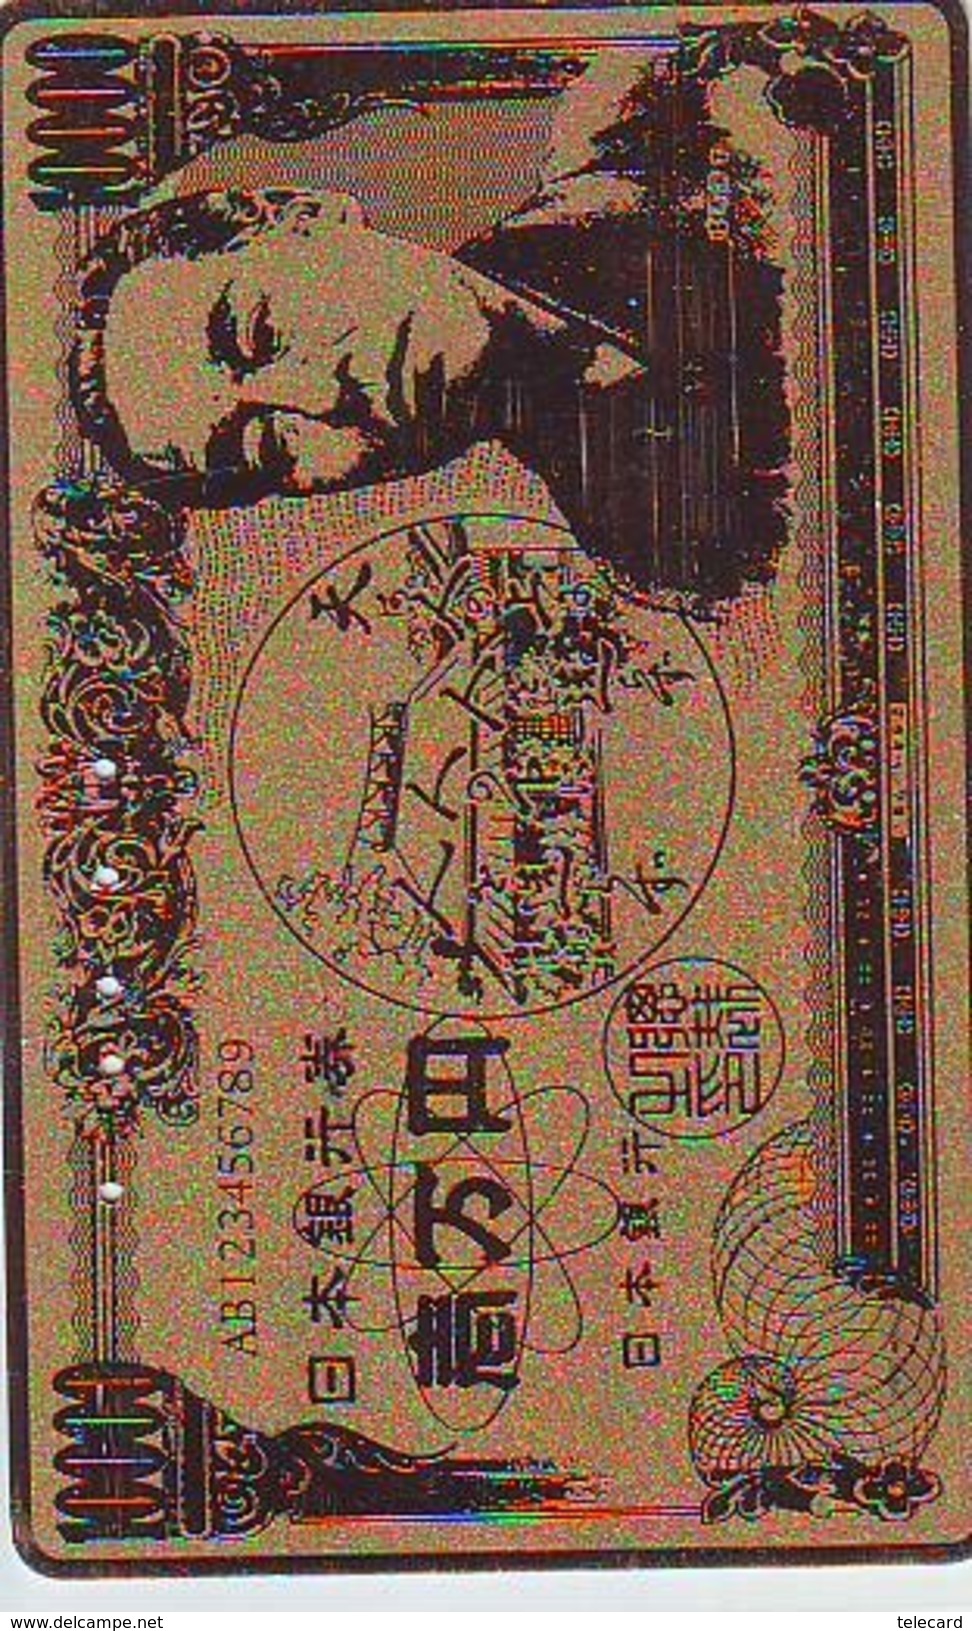 Télécarte JAPON * Billet De Banque (155) Notes Money Banknote Bill * Bankbiljet PHONECARD Japan * Coins * MUNTEN * - Stamps & Coins